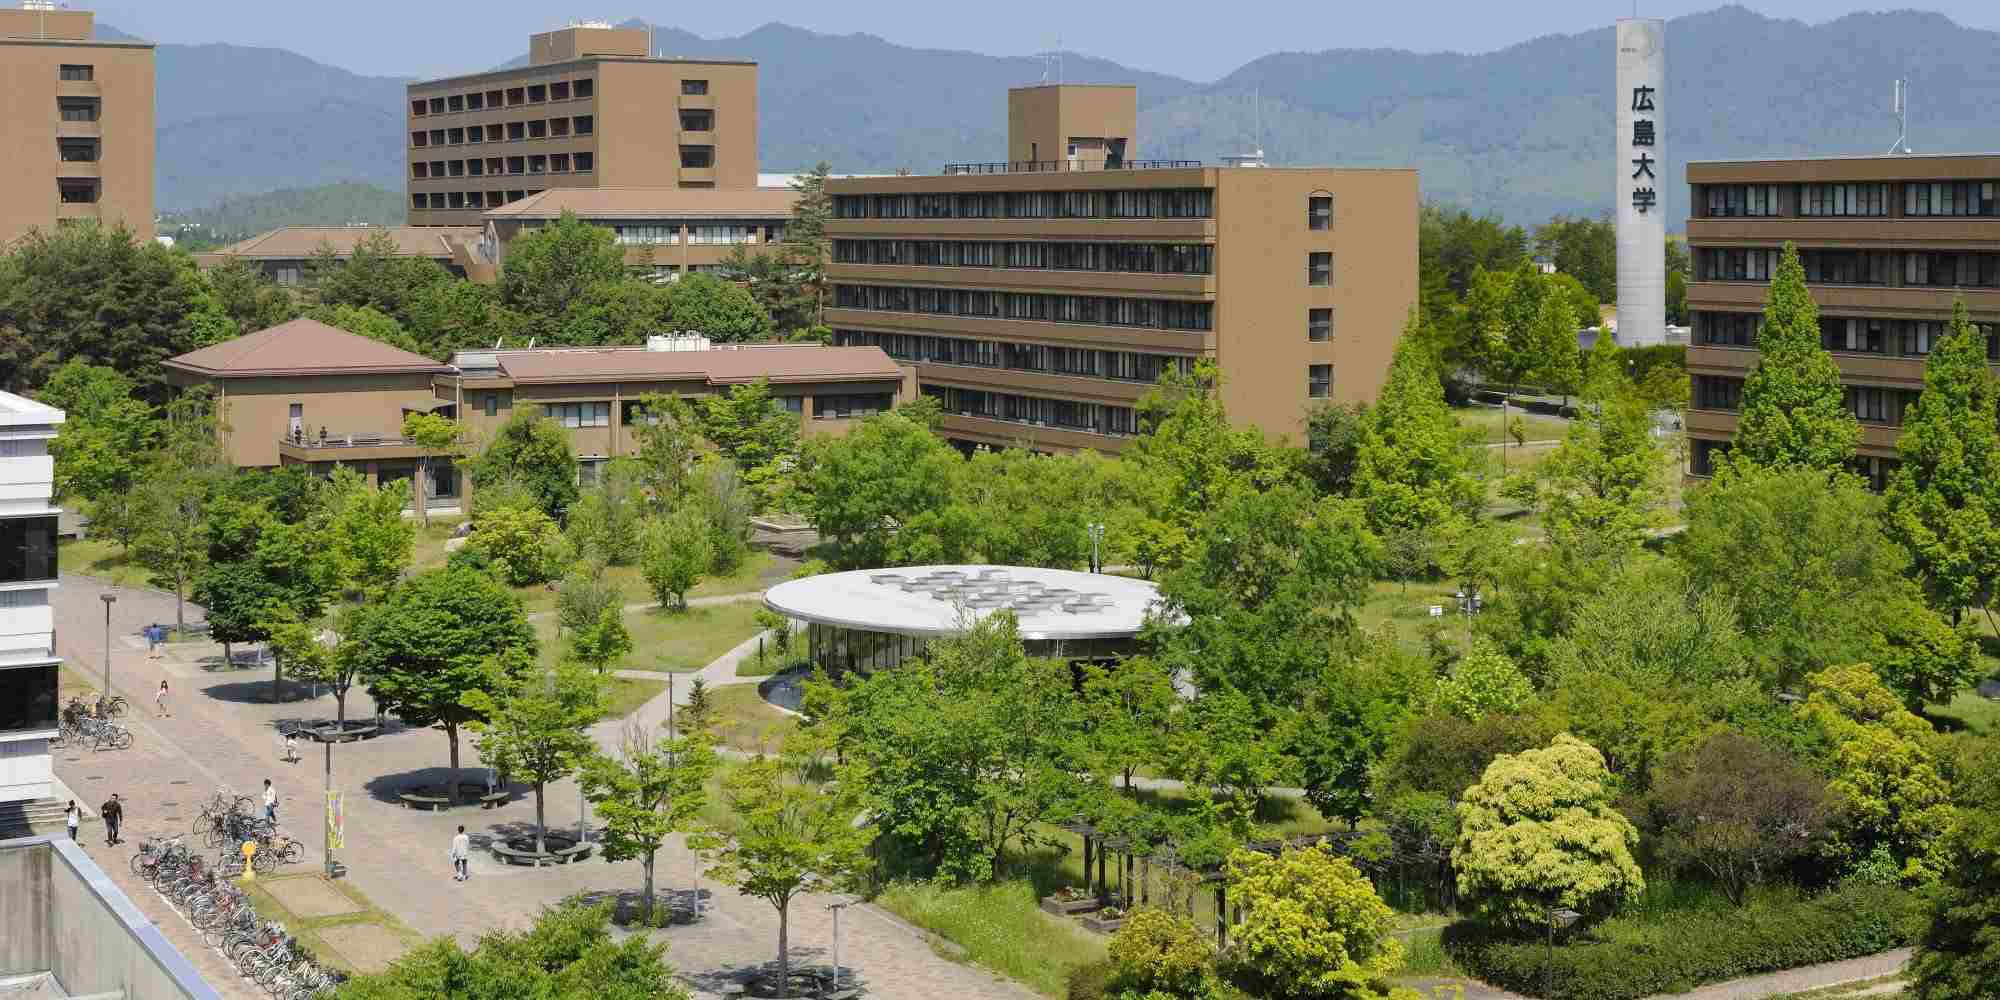 Đại học Hiroshima được xếp vào top 5 trường Đại học hàng đầu tại Nhật Bản